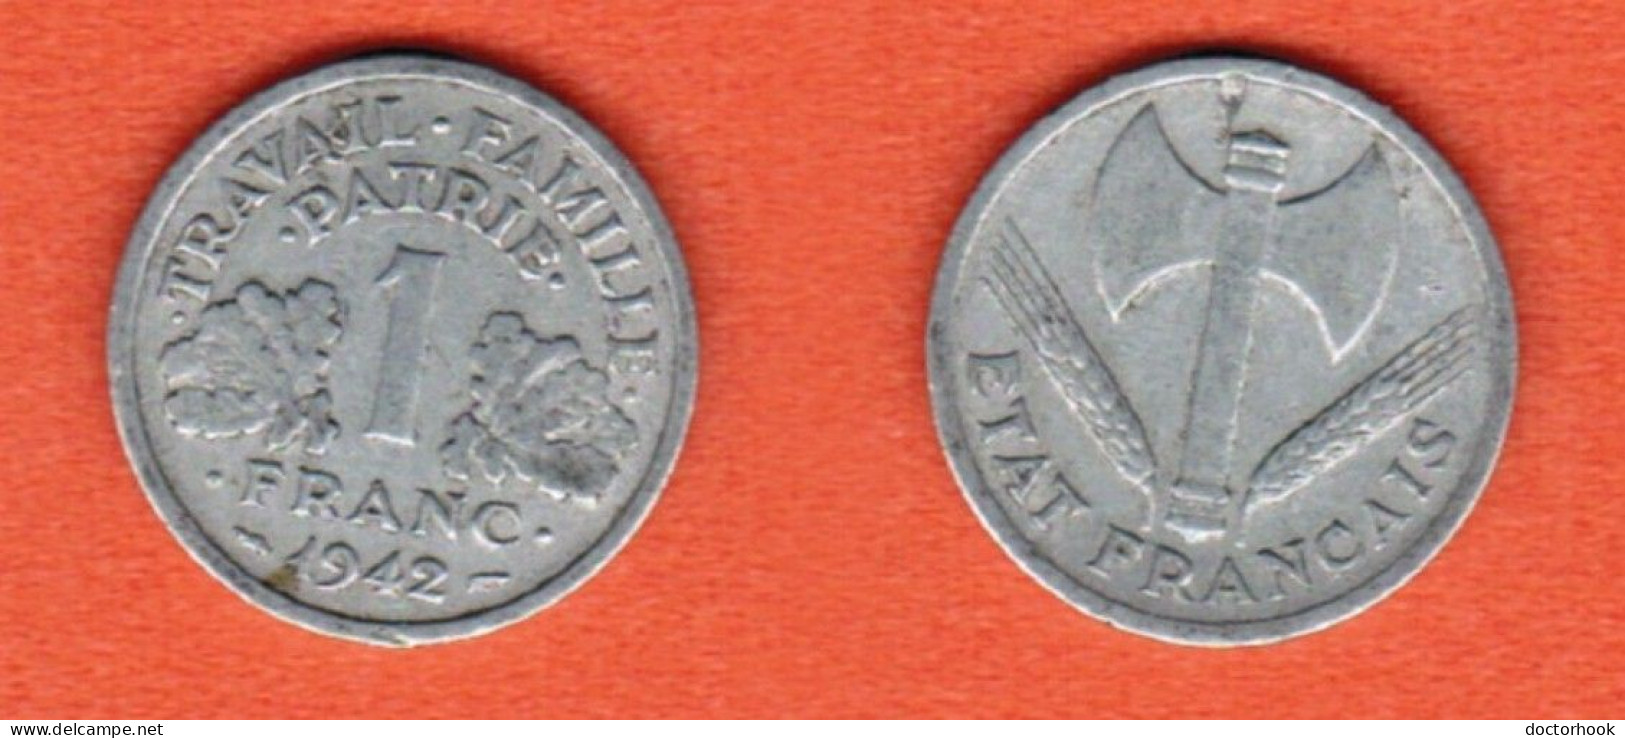 FRANCE   1 FRANC 1942 (KM # 902.1) #7228 - 1 Franc